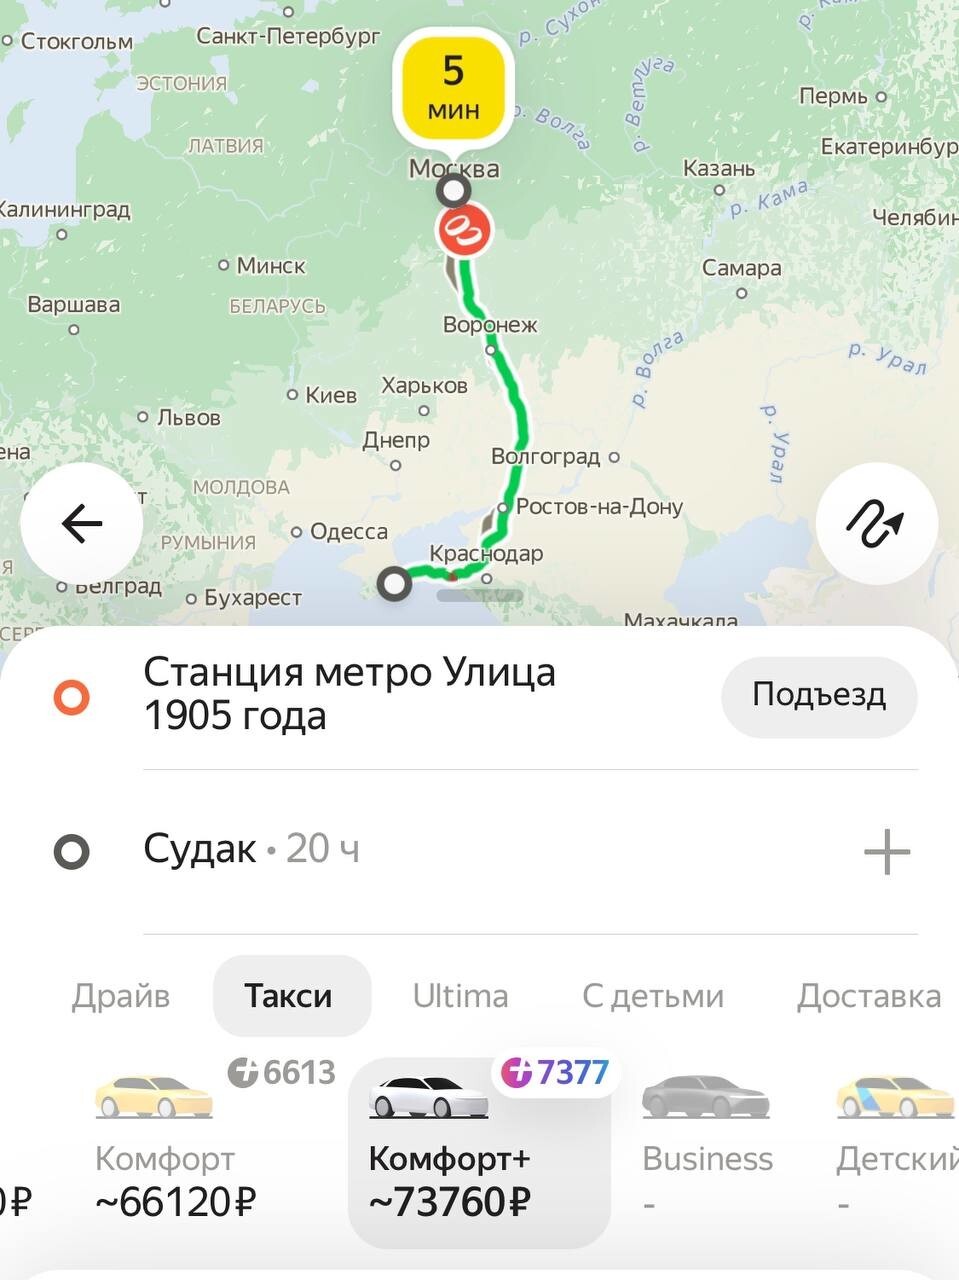 Таксист приехал на вызов в Москве и неожиданно отправился с пассажиром в пивной рейс до Крыма